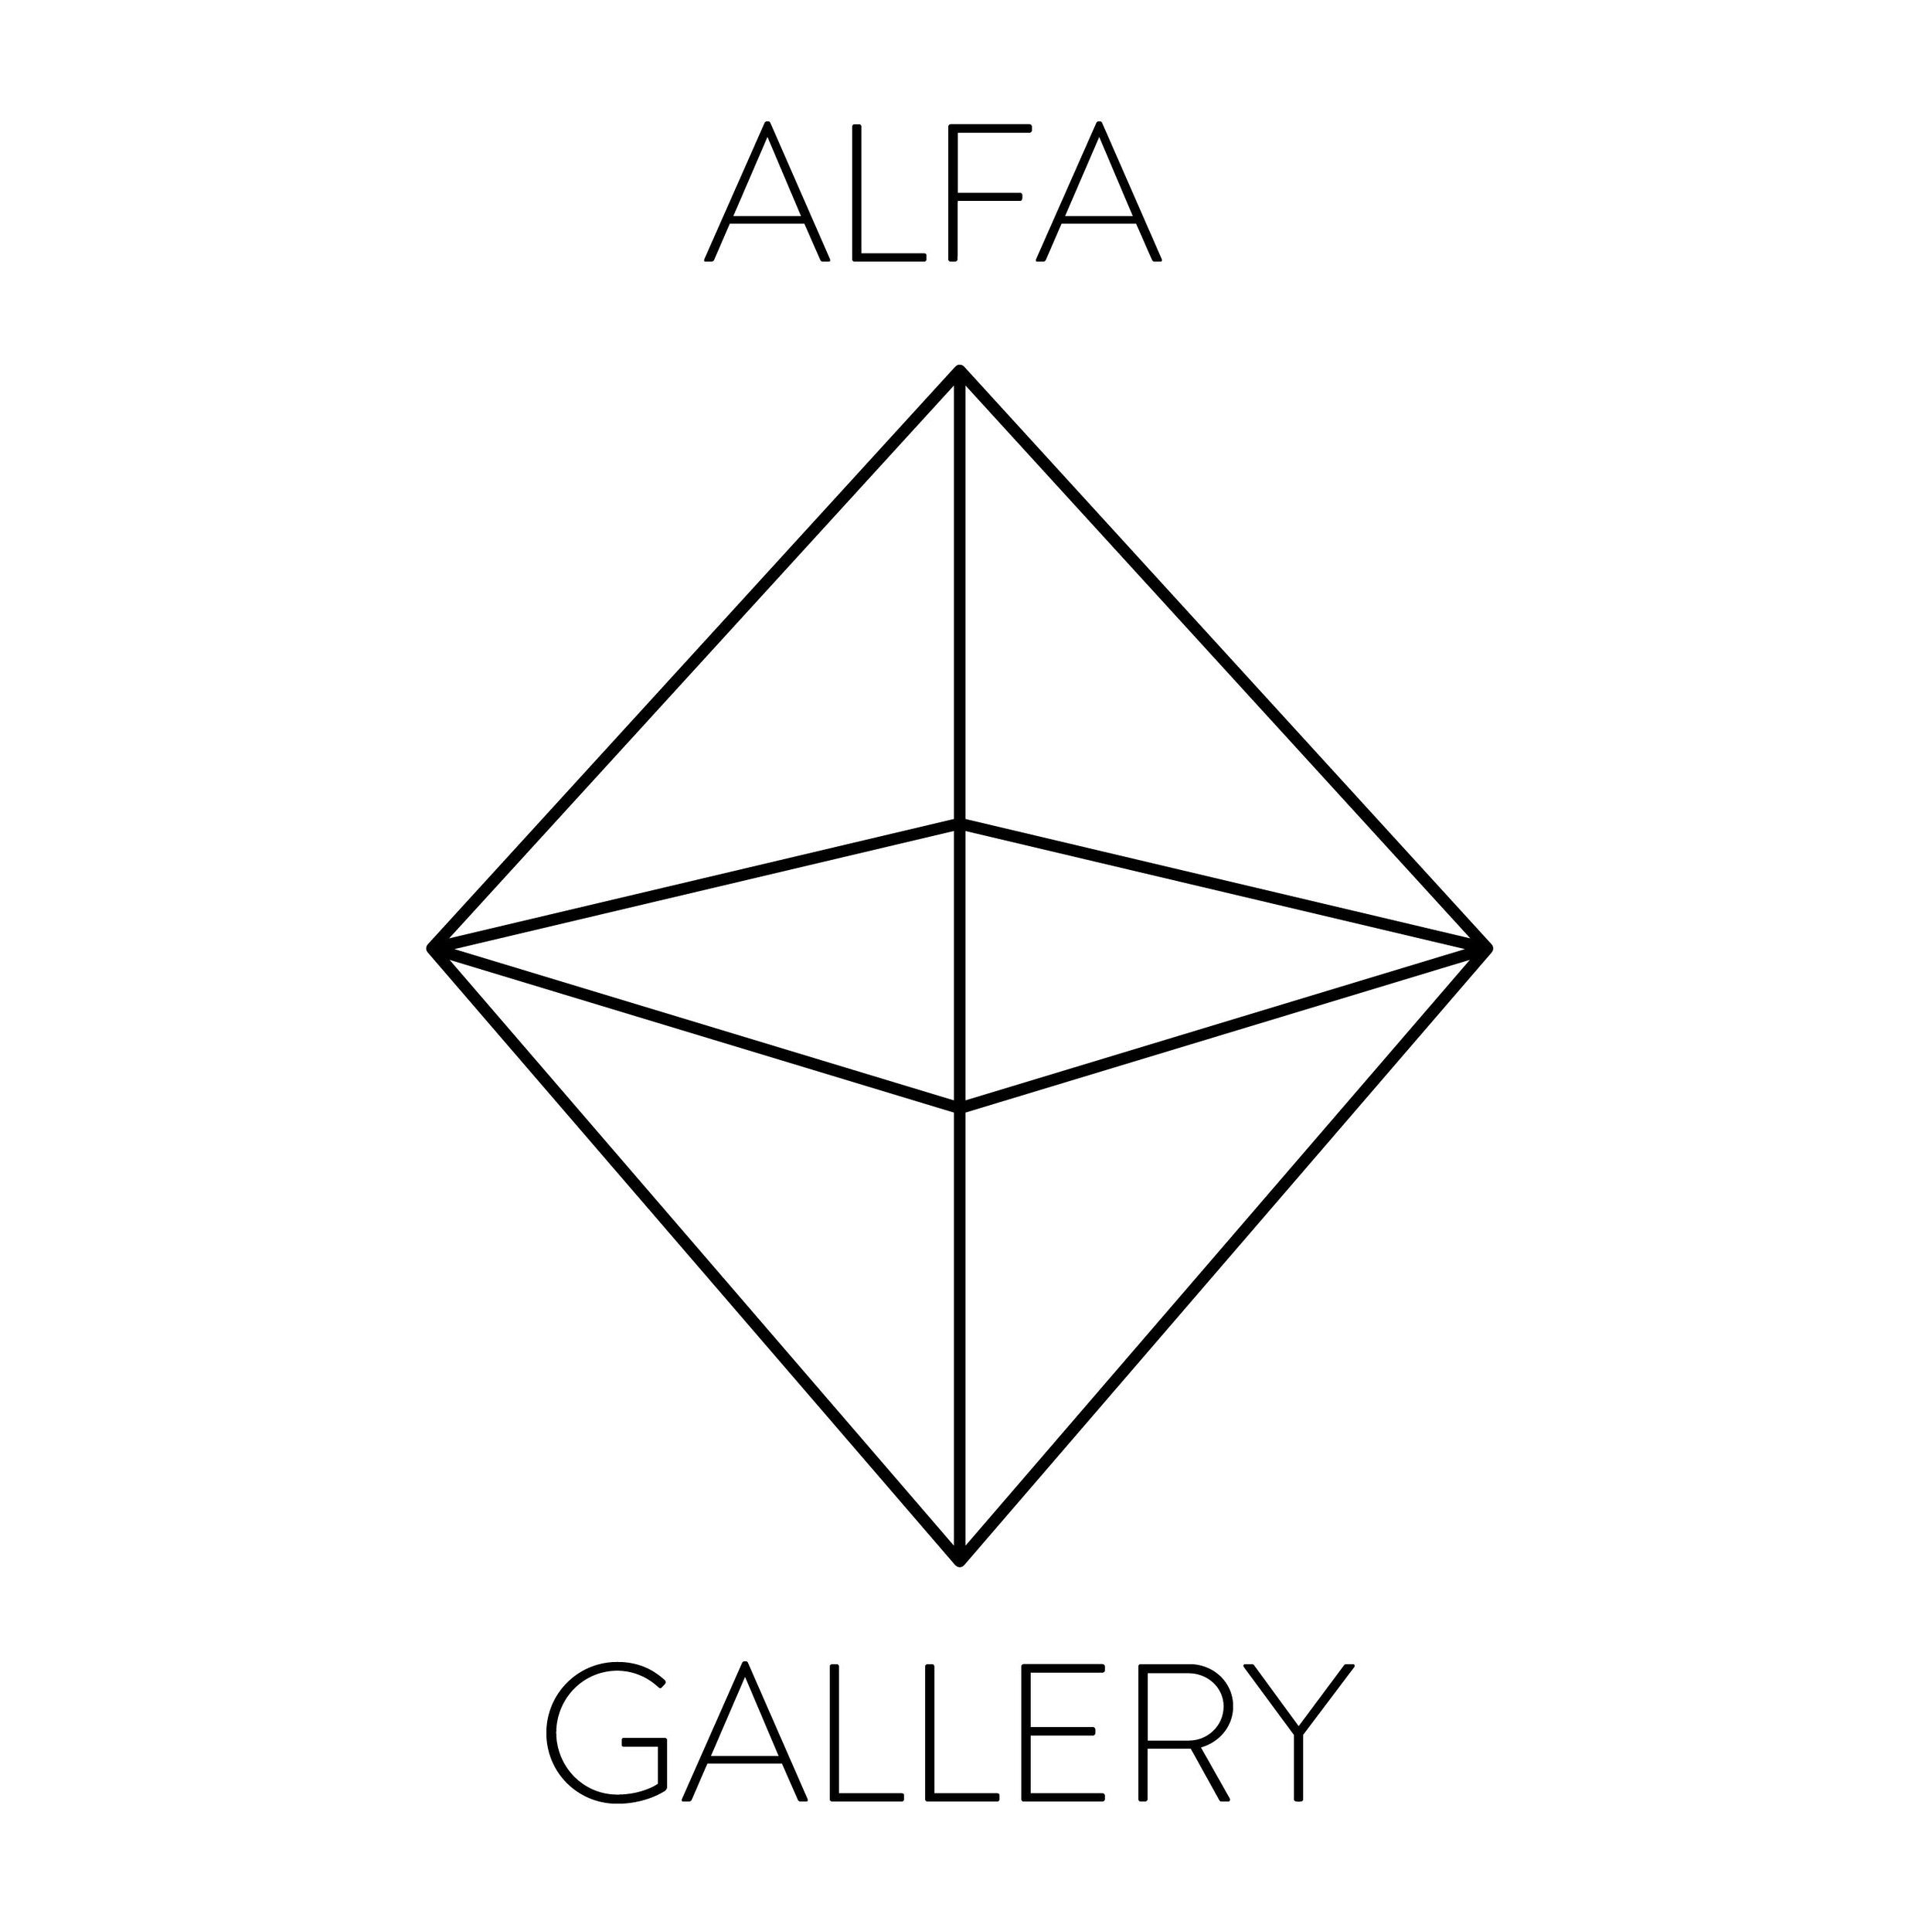 Alfa is. Alpha треугольник. Альфа logo. Альфа звезда логотип. Alpha artist.